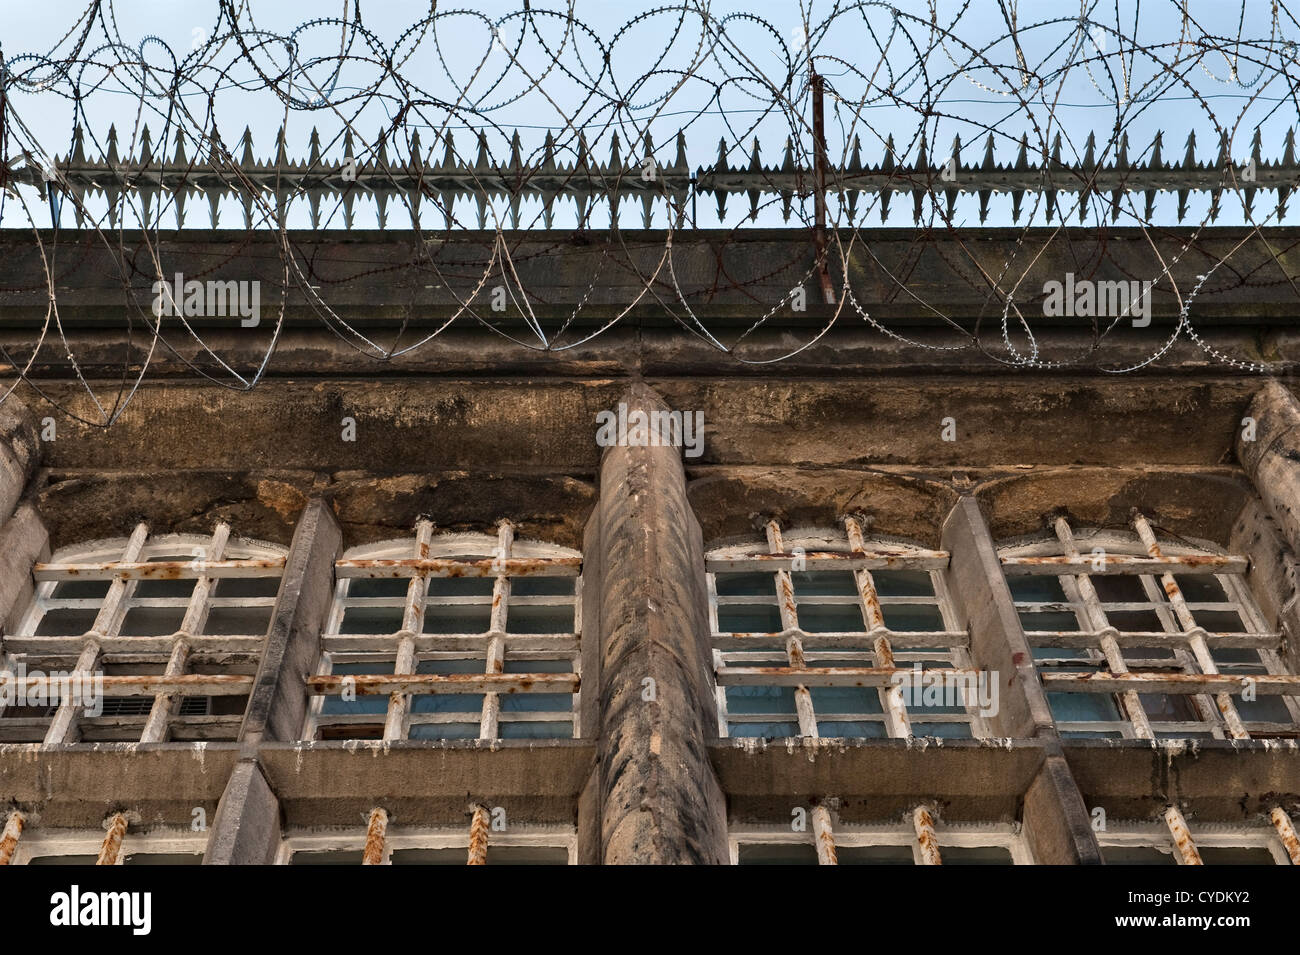 Les barres et le fil de rasoir empêchent l'accès au toit de Une prison récemment abandonnée au Royaume-Uni Banque D'Images